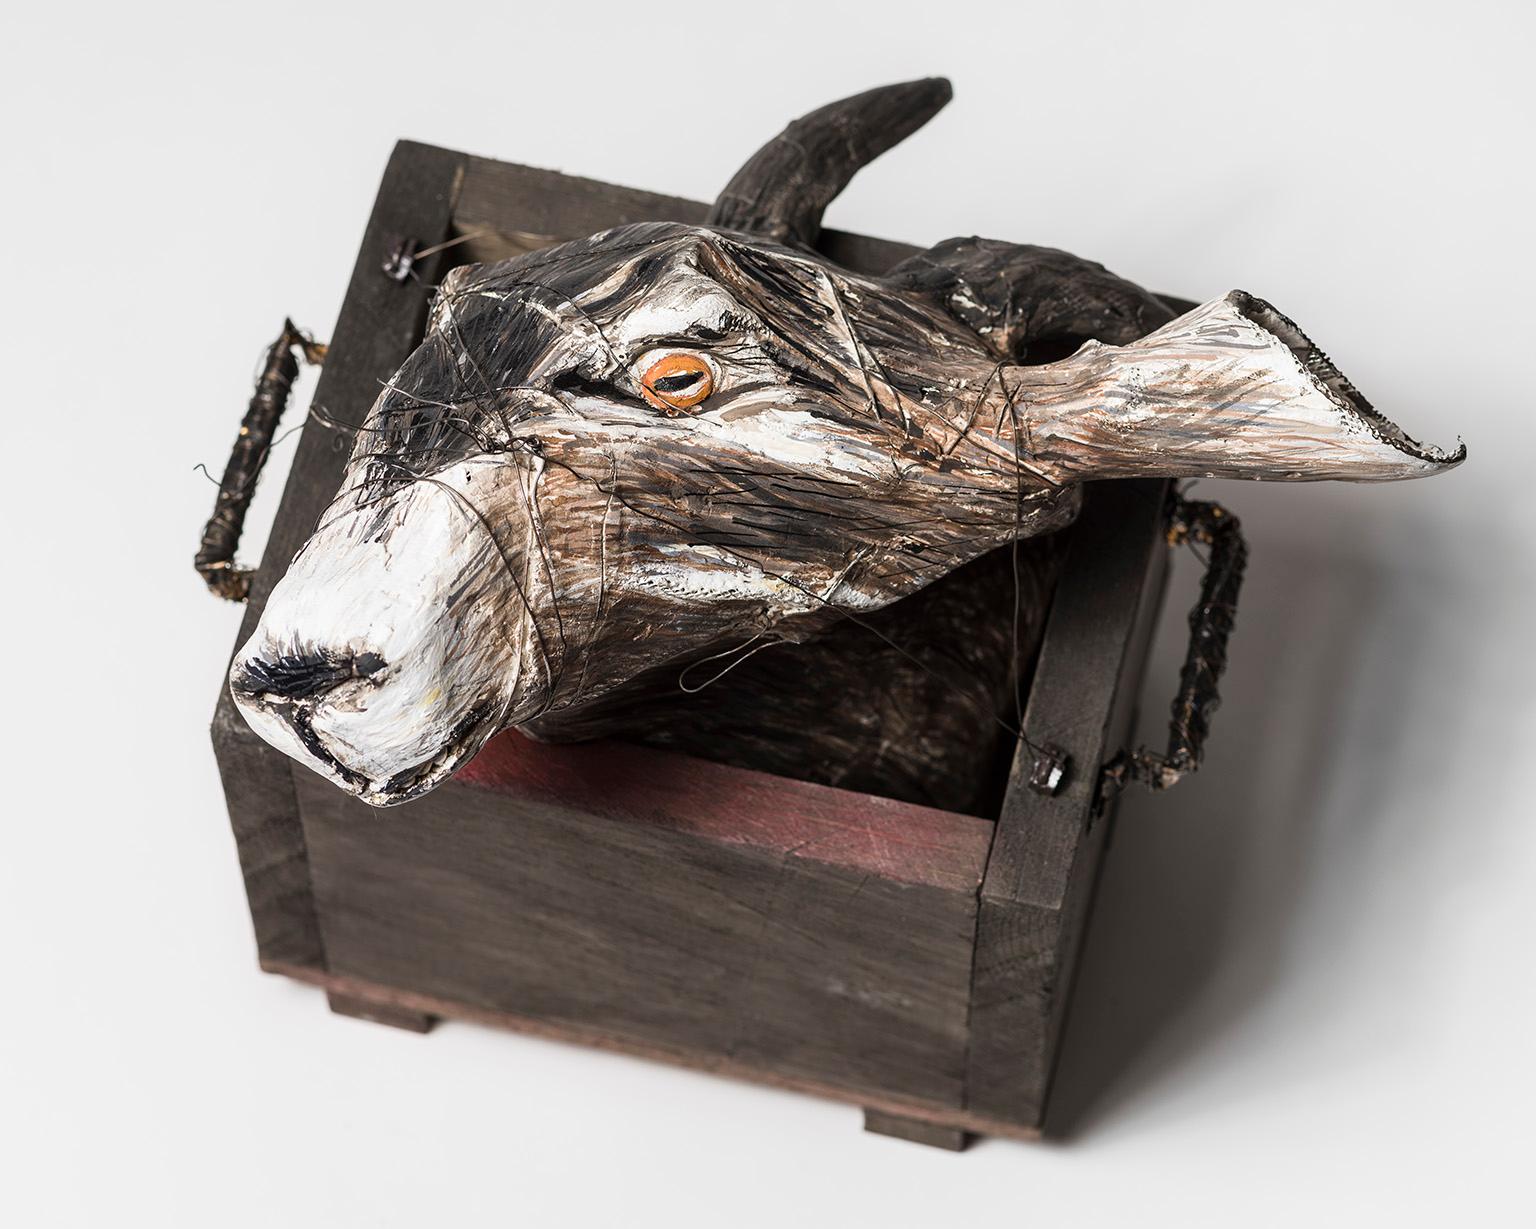 Goat Head sculpture in Wood box: 'Jersey Devil II' - Mixed Media Art by Elizabeth Jordan